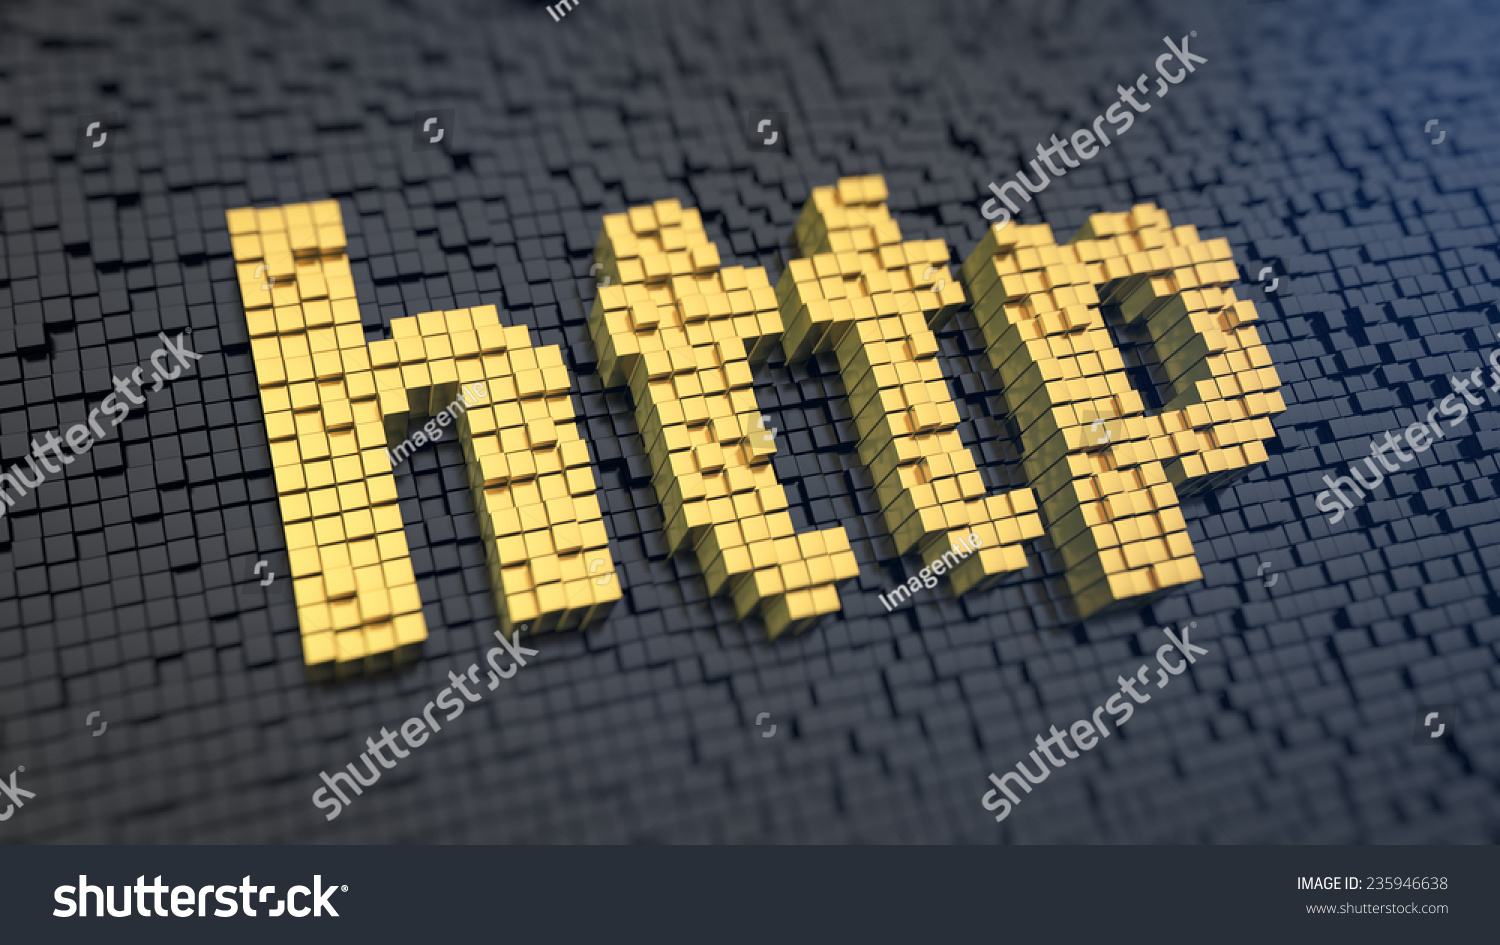 缩略词http黄色方形像素一个黑色矩阵的背景